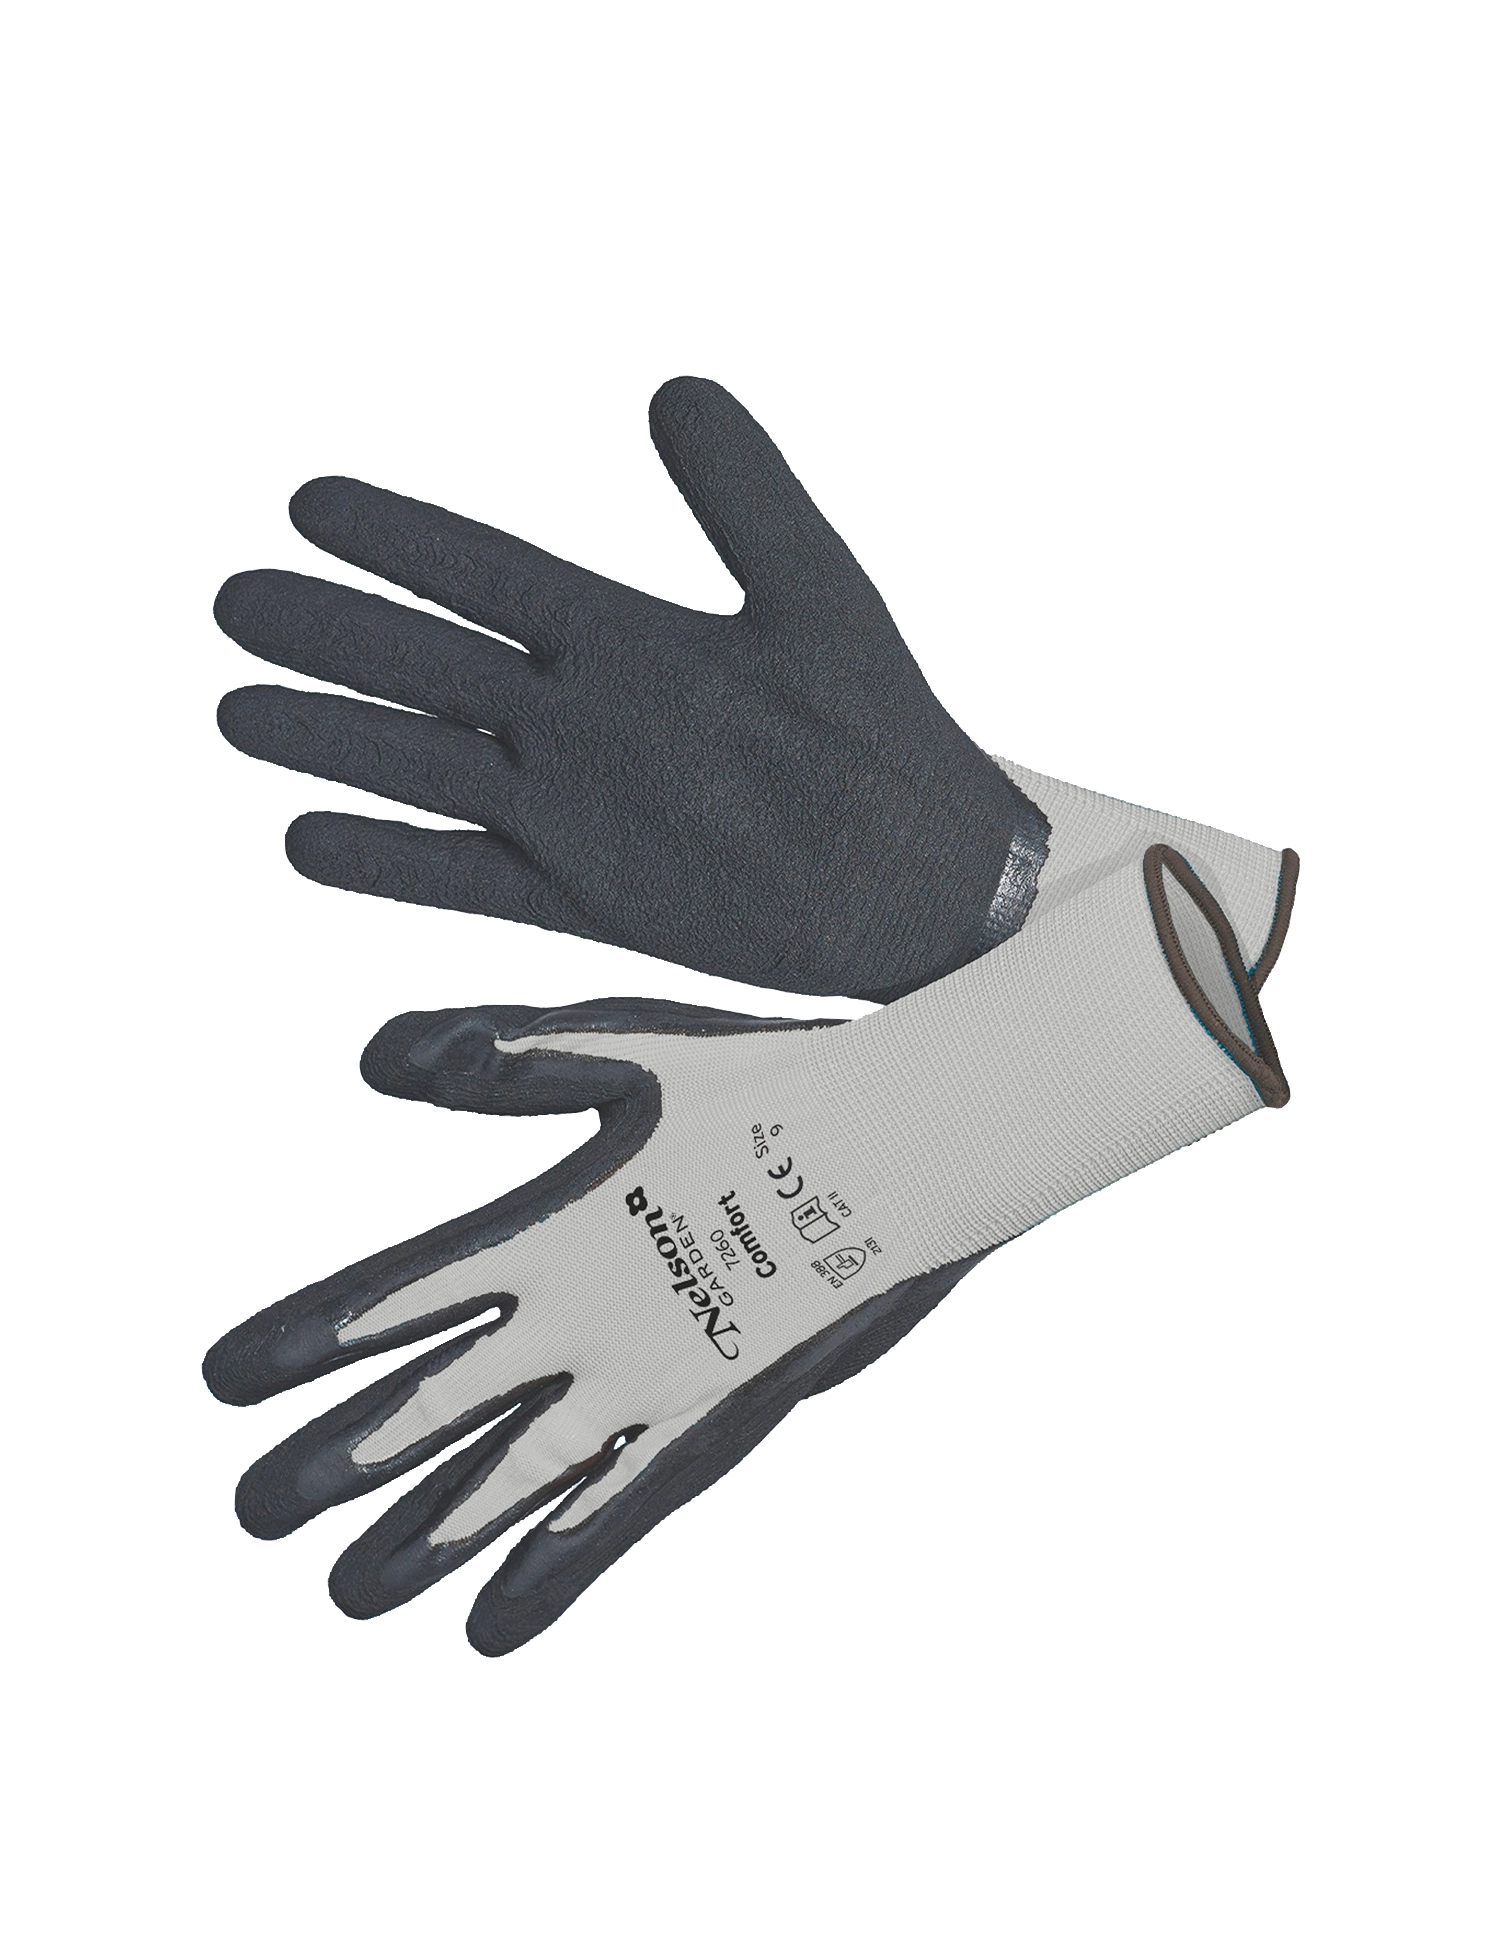 Handske 'Comfort', grå/sort. Str.